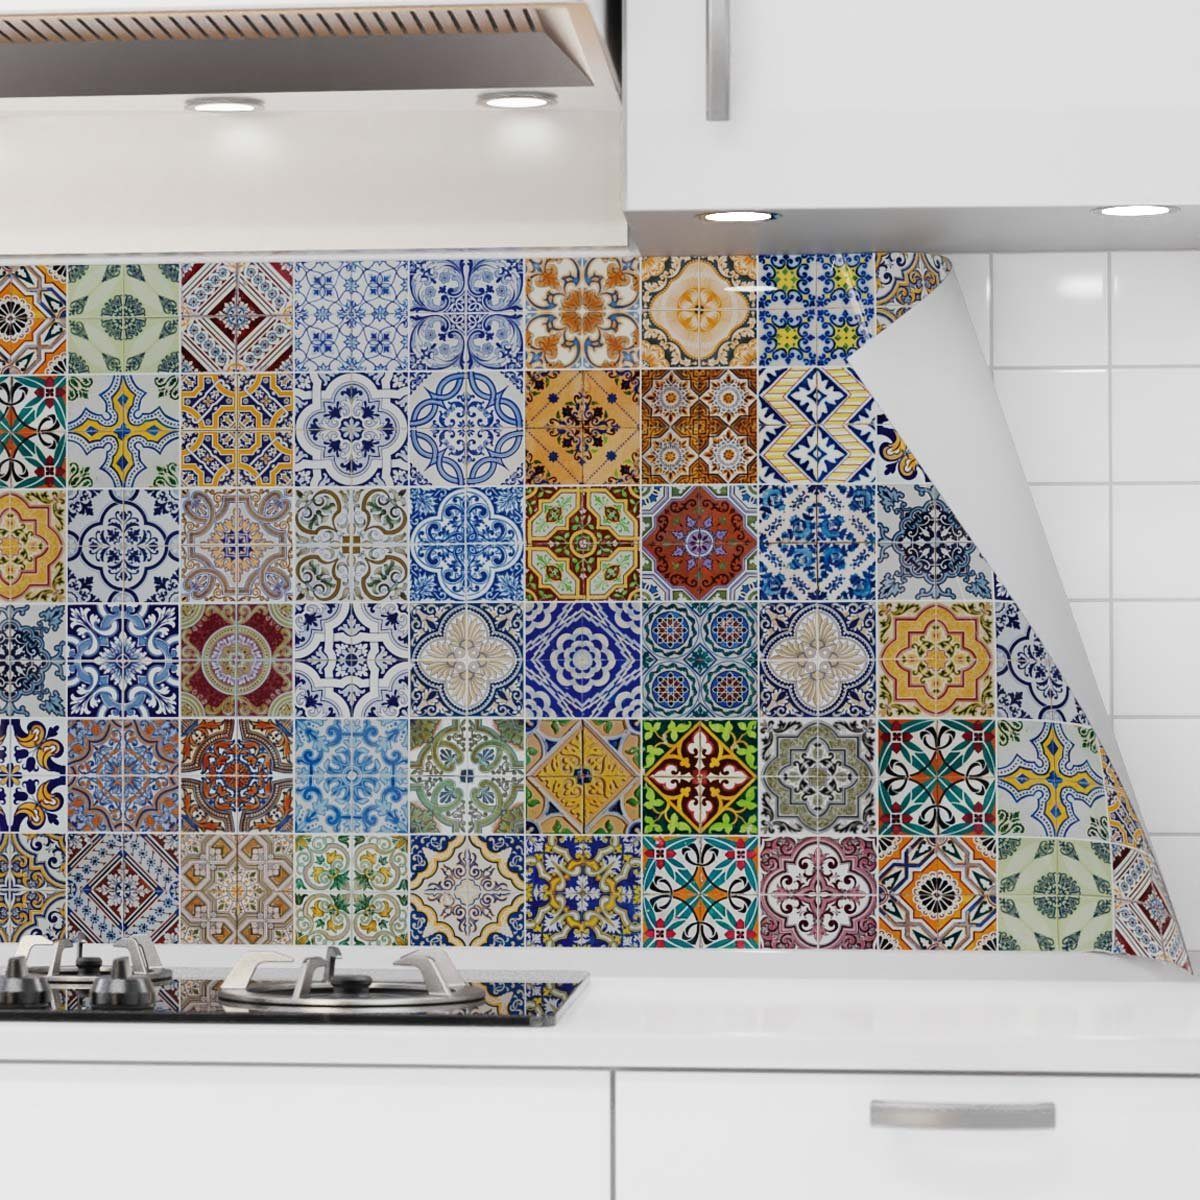 danario Küchenrückwand selbstklebend - Matt - Mosaikfliesen bunt PET - Spritzschutz versteifte Folie Küche